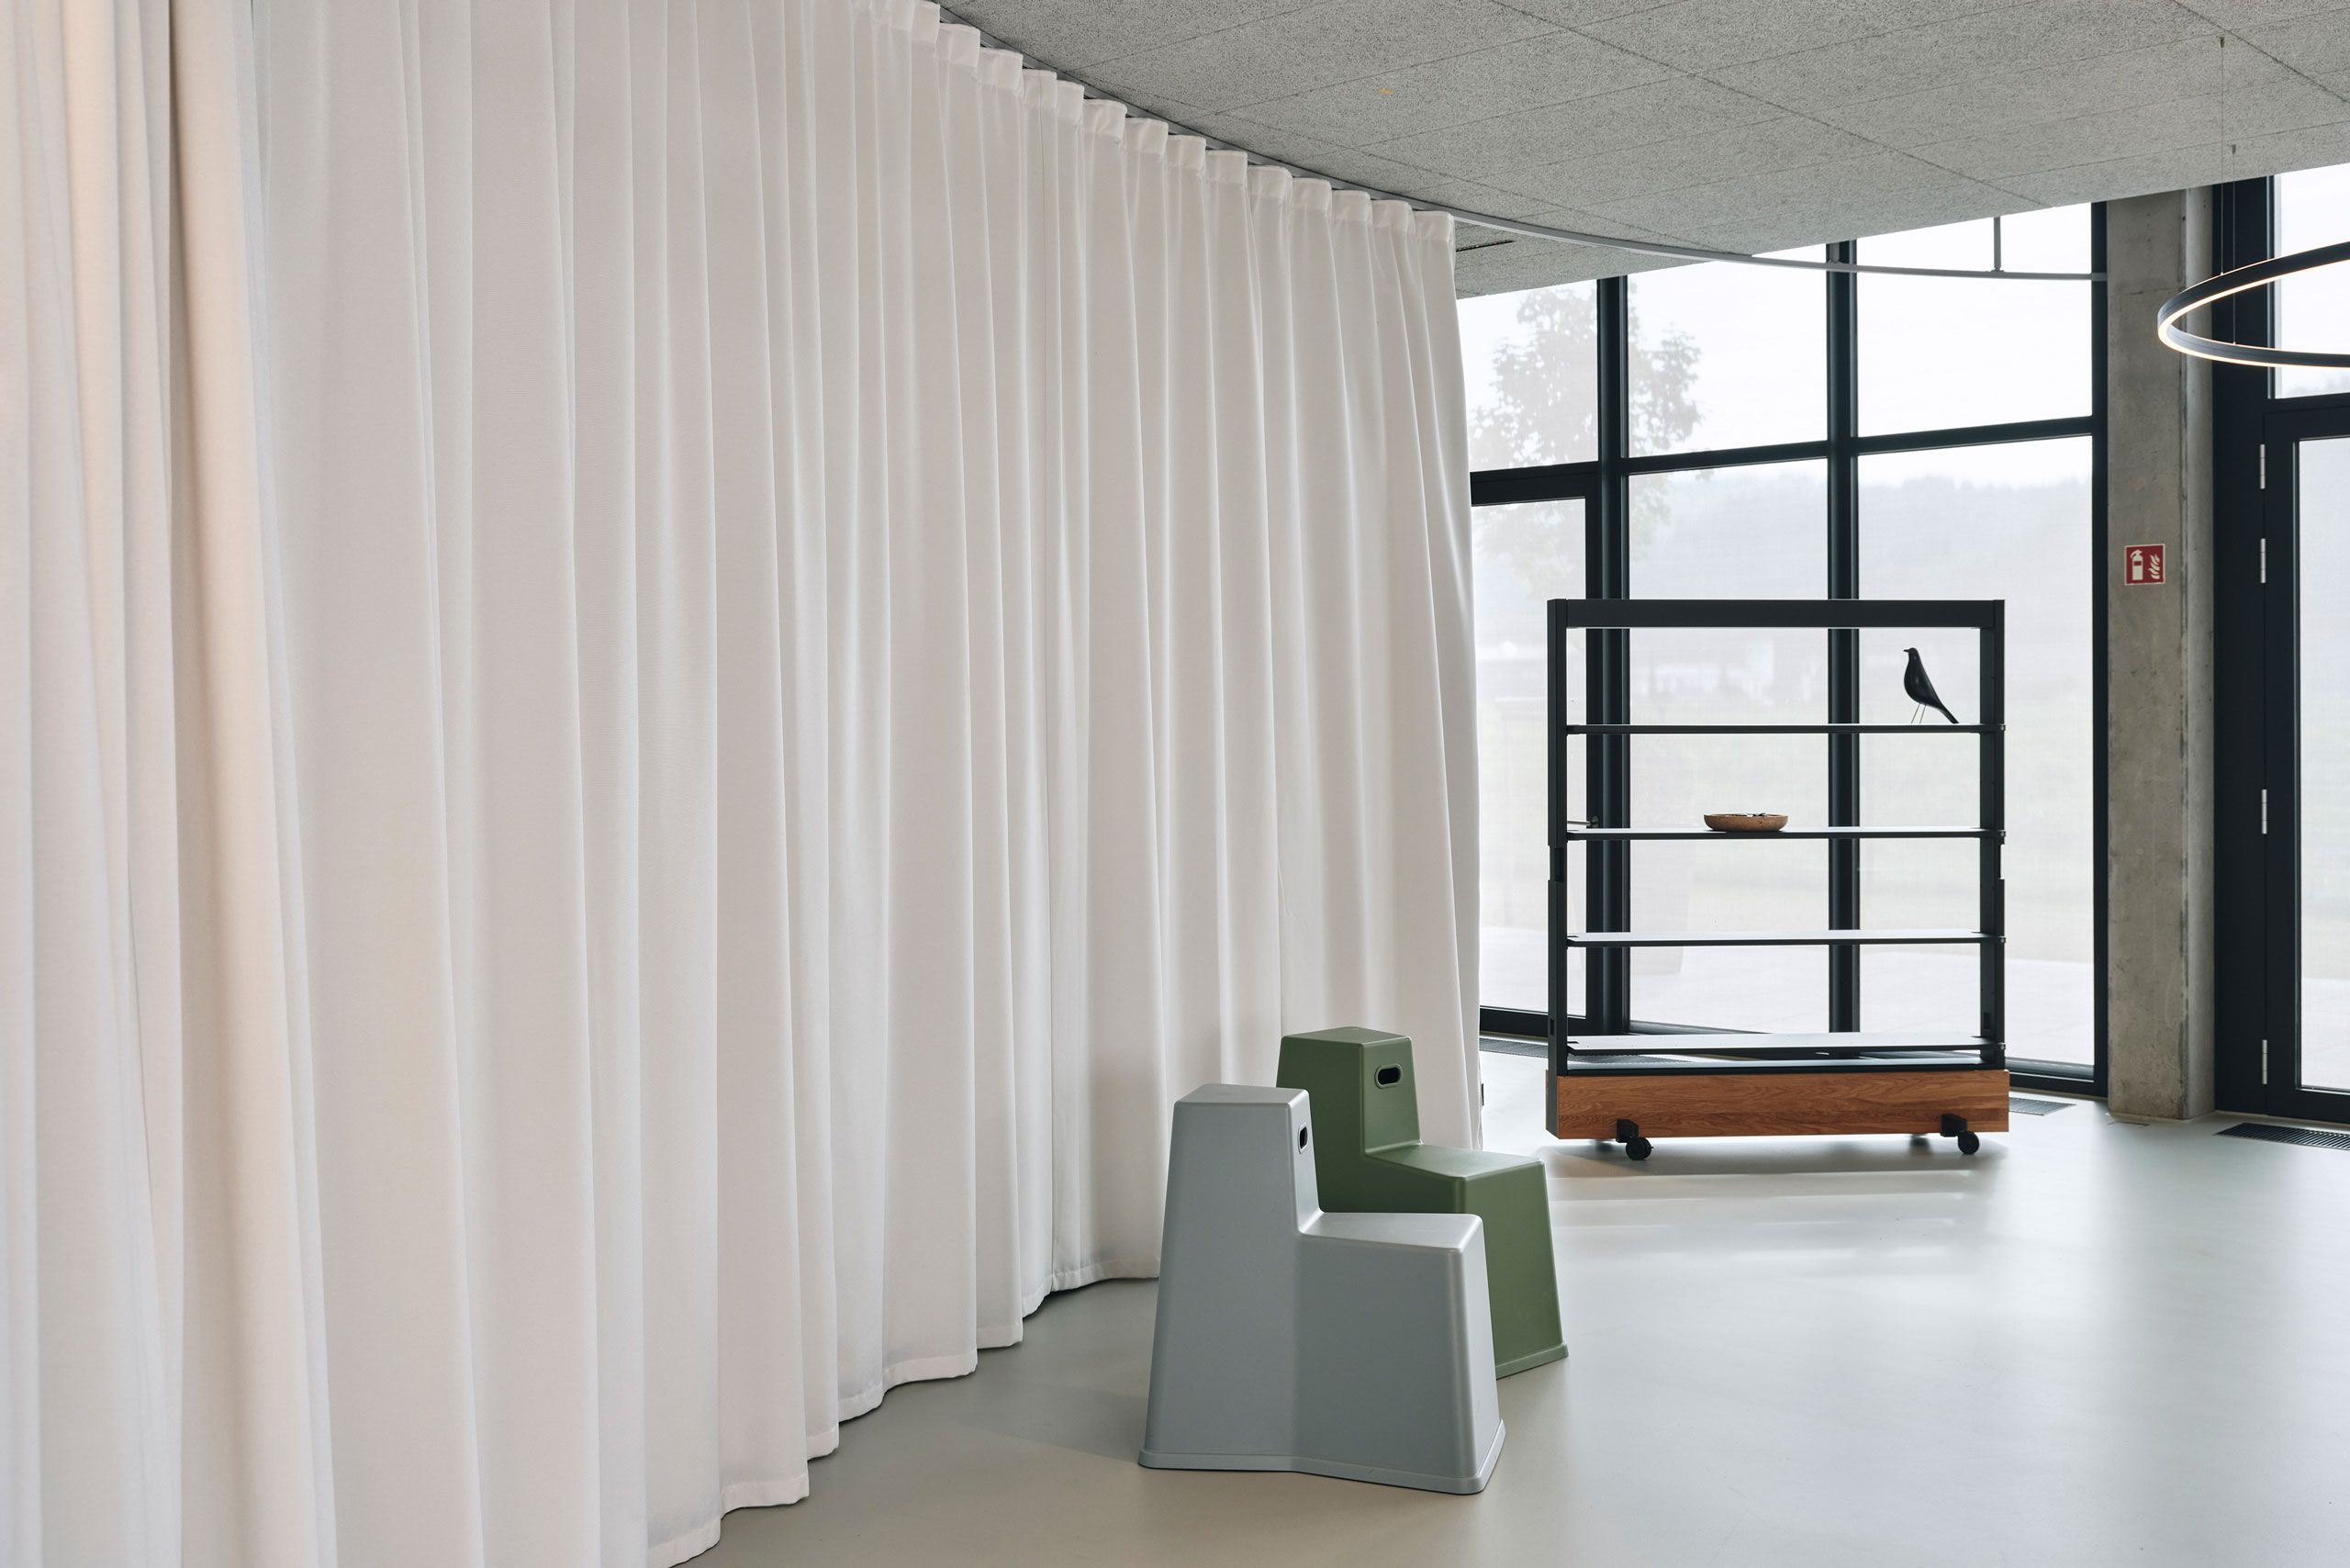 Ruhige Bürosituation mit wenig Möbel und viel Raum, auf einer Seite räumlich getrennt durch einen Akustiktrennvorhang.